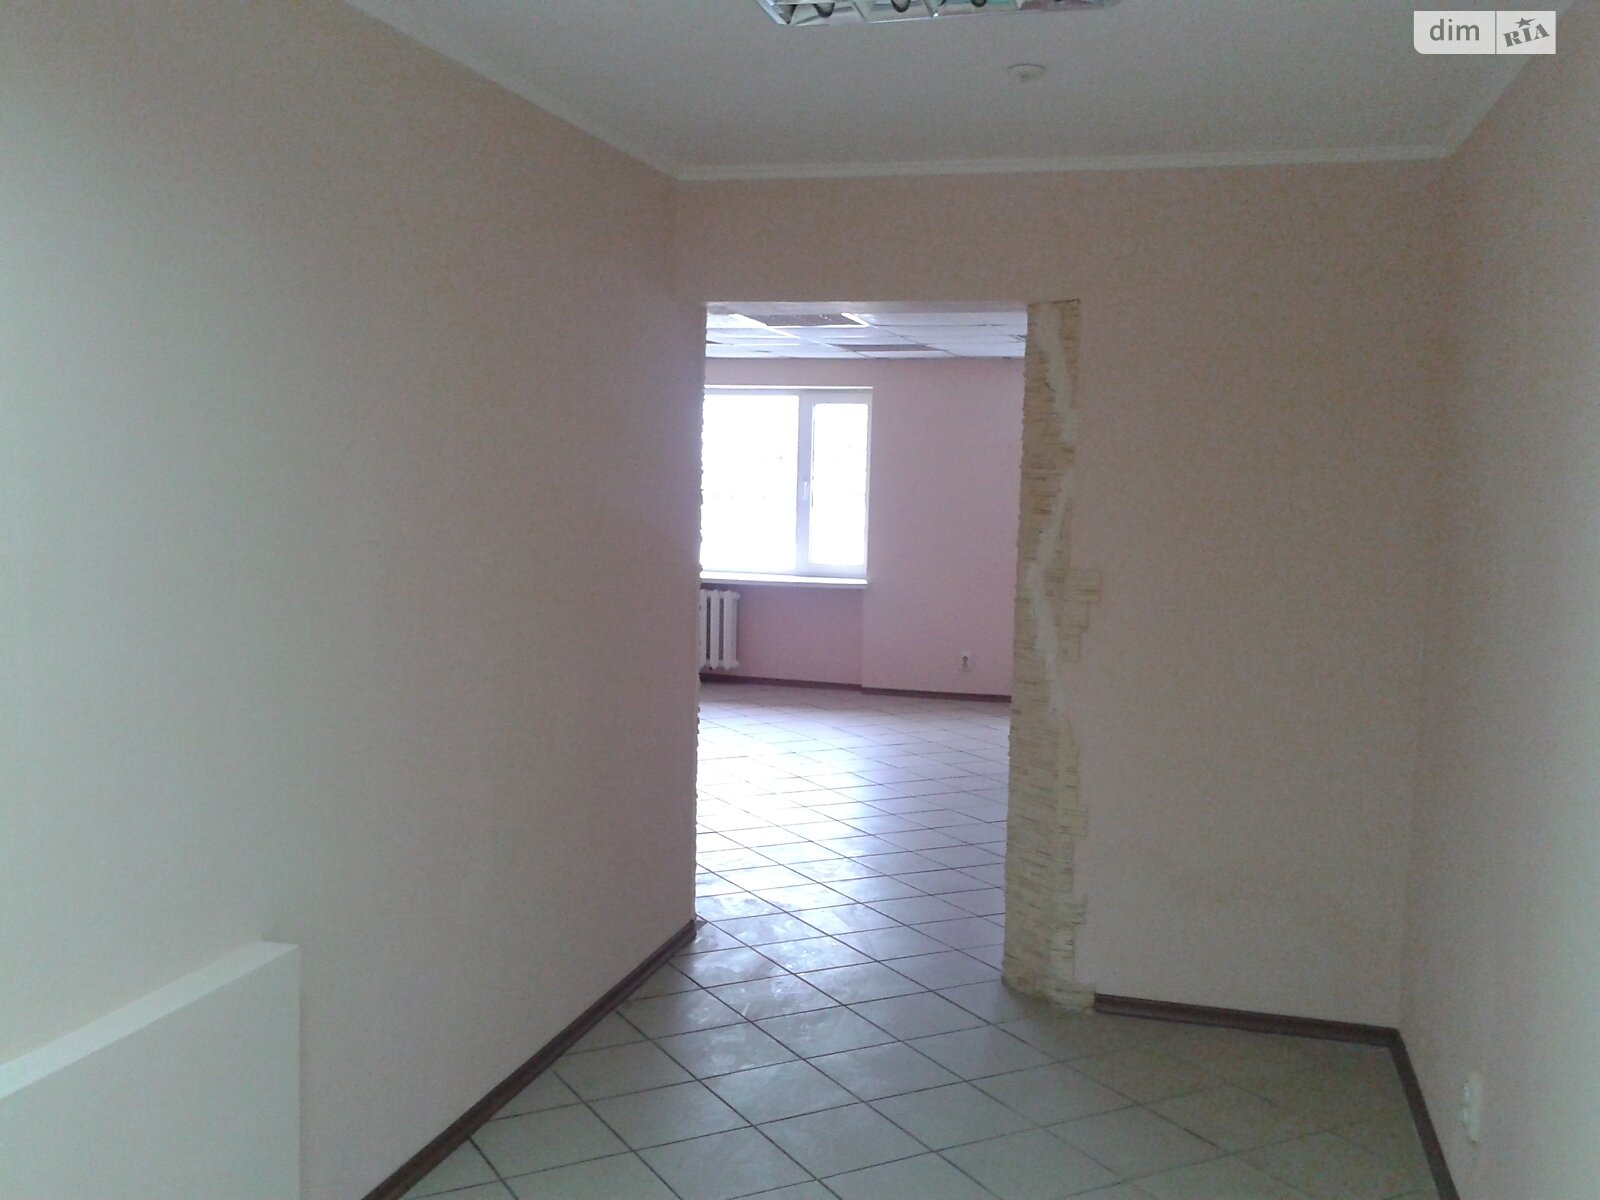 Аренда офисного помещения в Николаеве, Богоявленский проспект, помещений -, этаж - 1 фото 1